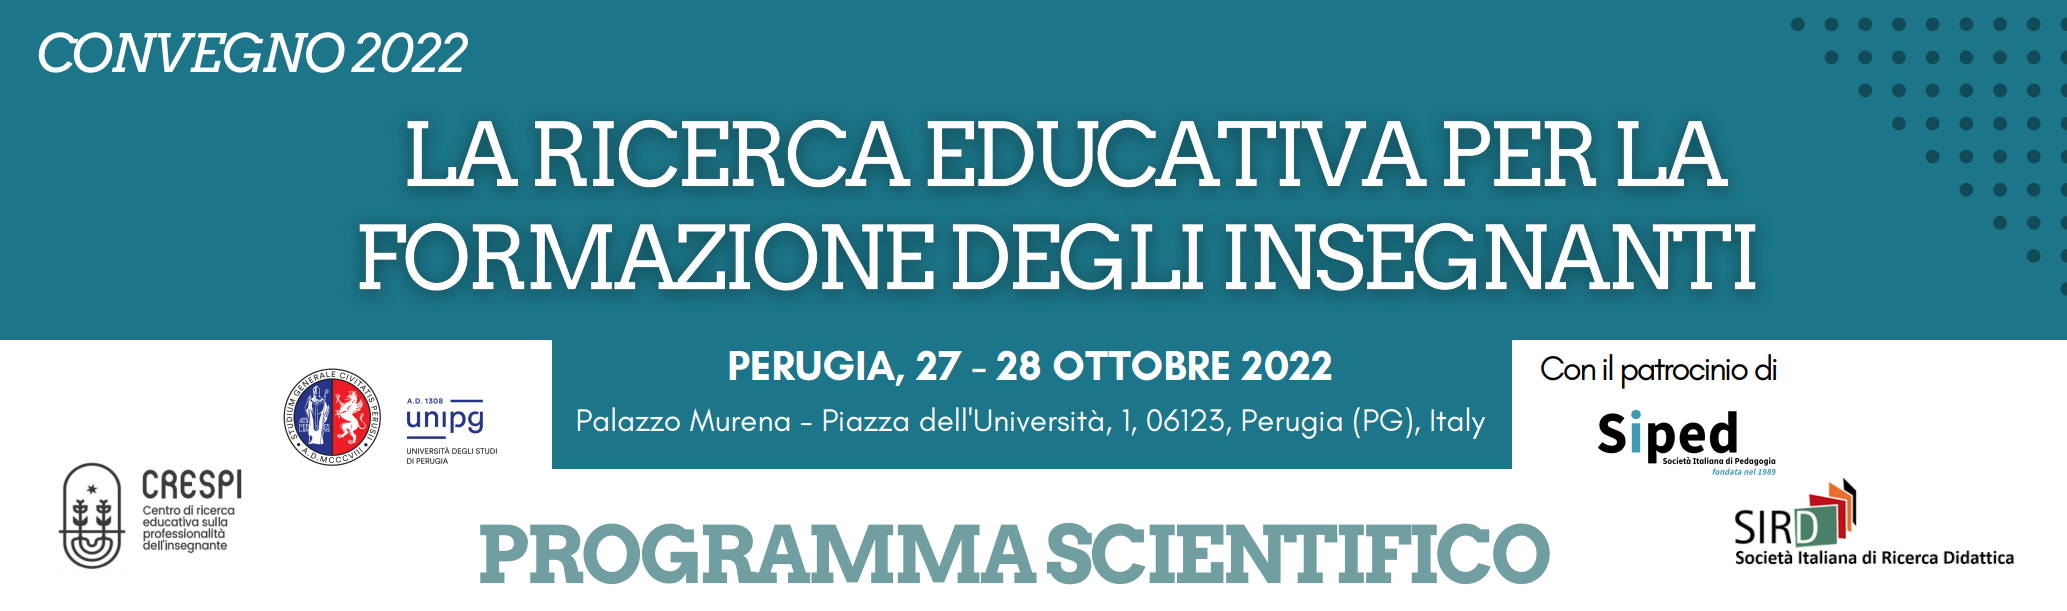 Convegno a Perugia, 27-28 ottobre: “Ricerca educativa per la formazione degli insegnanti”